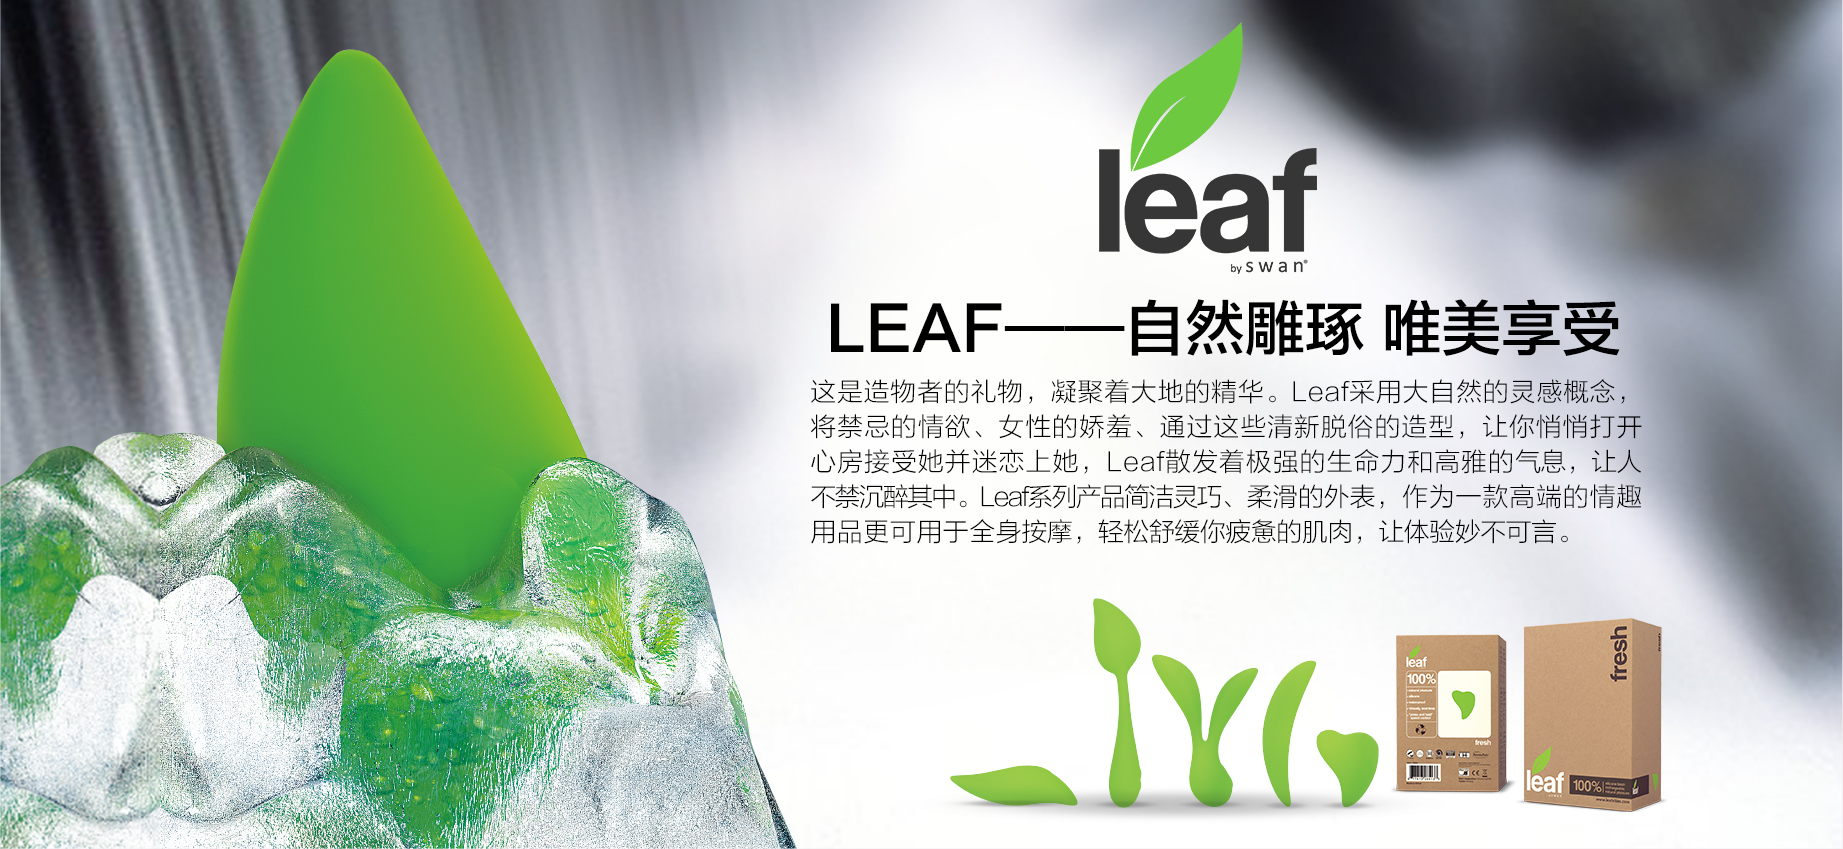 官网详情leaf-.jpg